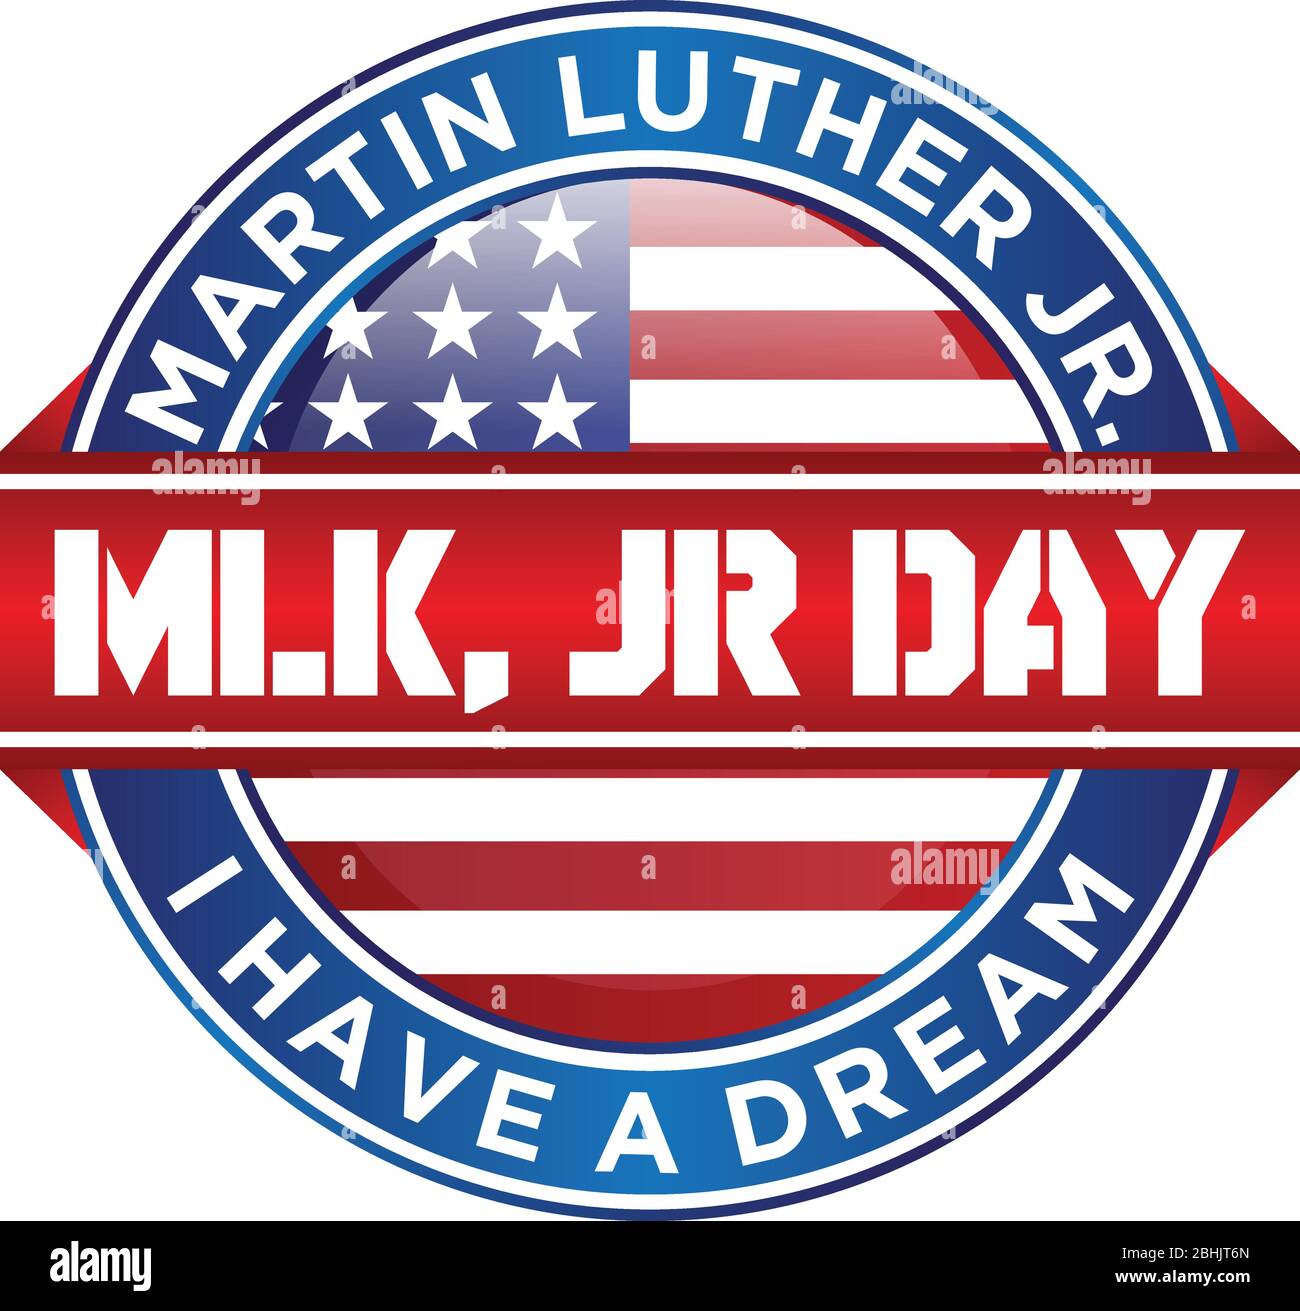 Design emblem Martin Luther King Jr. day or MLK JR. Day letter emblem design on the white background. Design element greeting card, banner, poster, ba Stock Vector